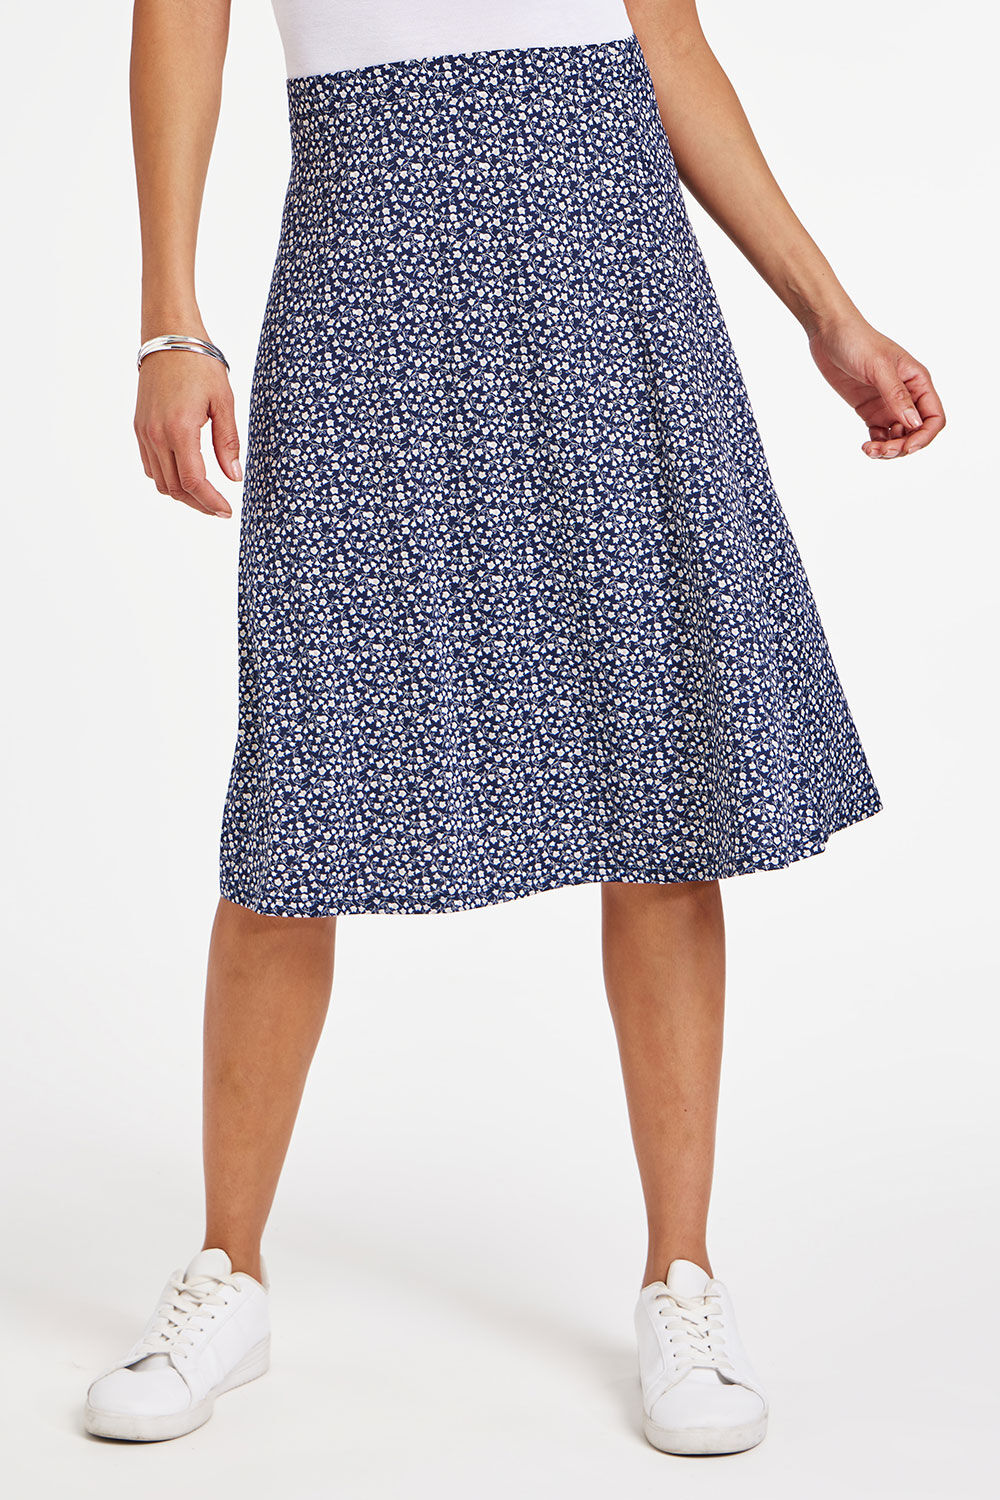 Bonmarche Navy Ditsy Print Flippy Skirt, Size: 14